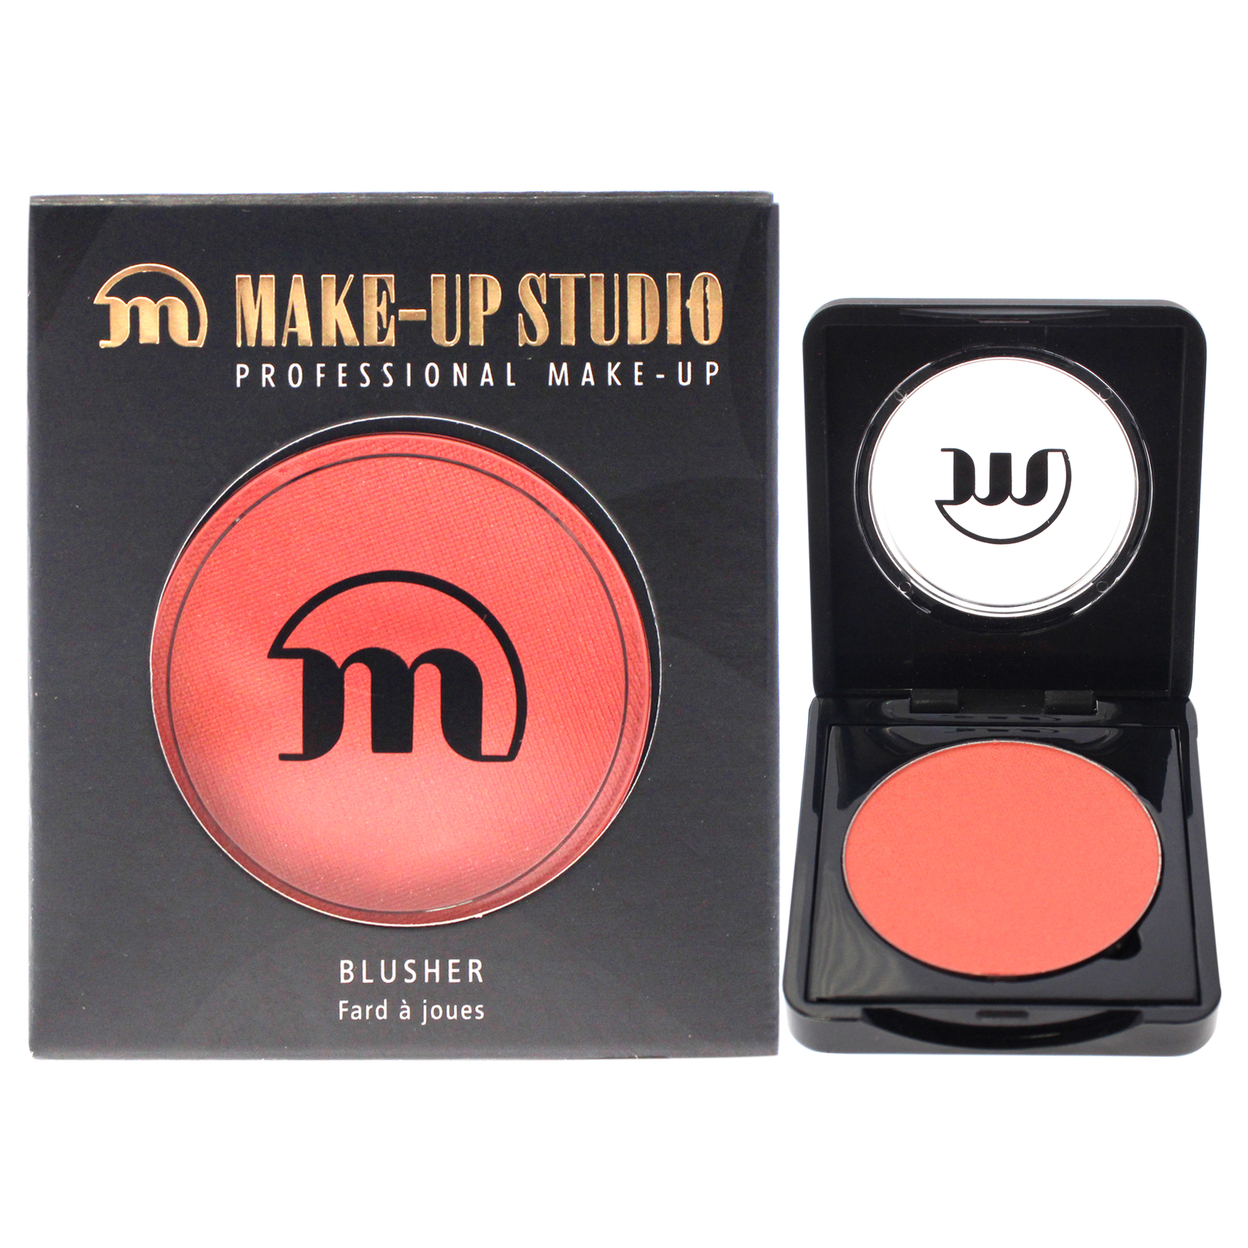 Make-Up Studio Blush - 40 0.1 Oz